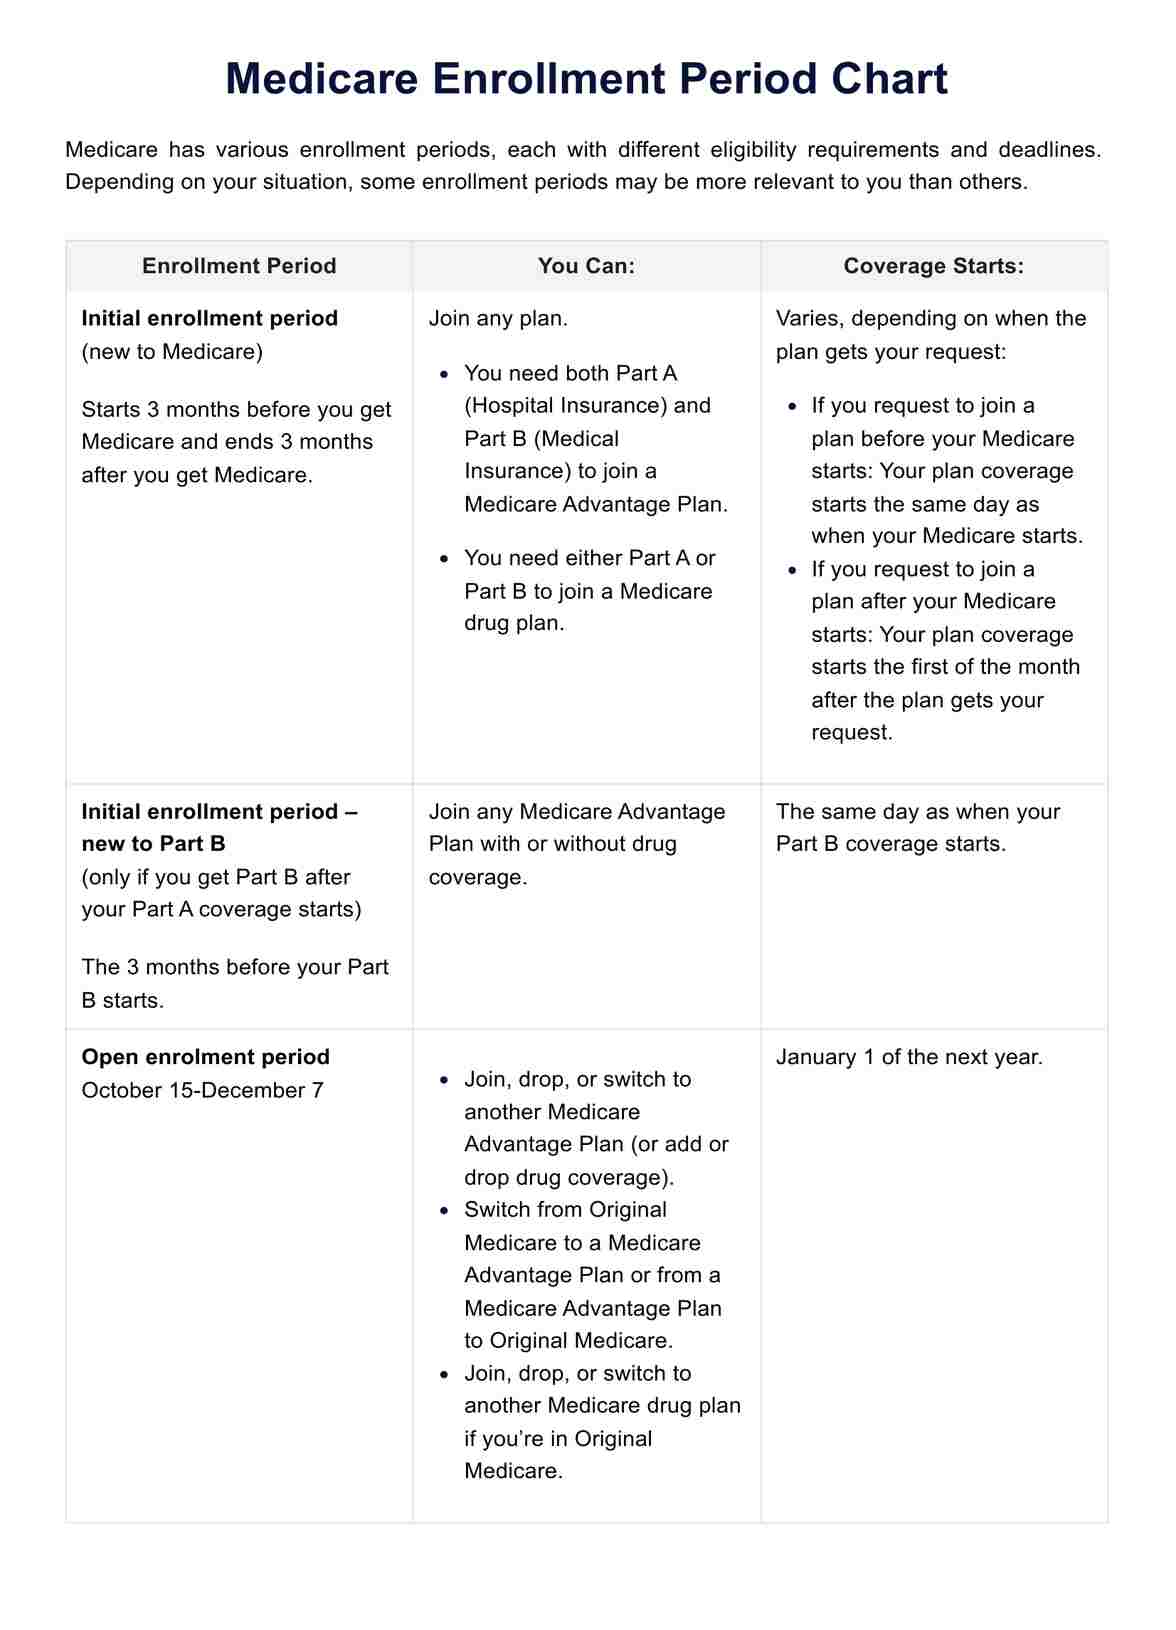 Medicare Enrollment Period Chart PDF Example